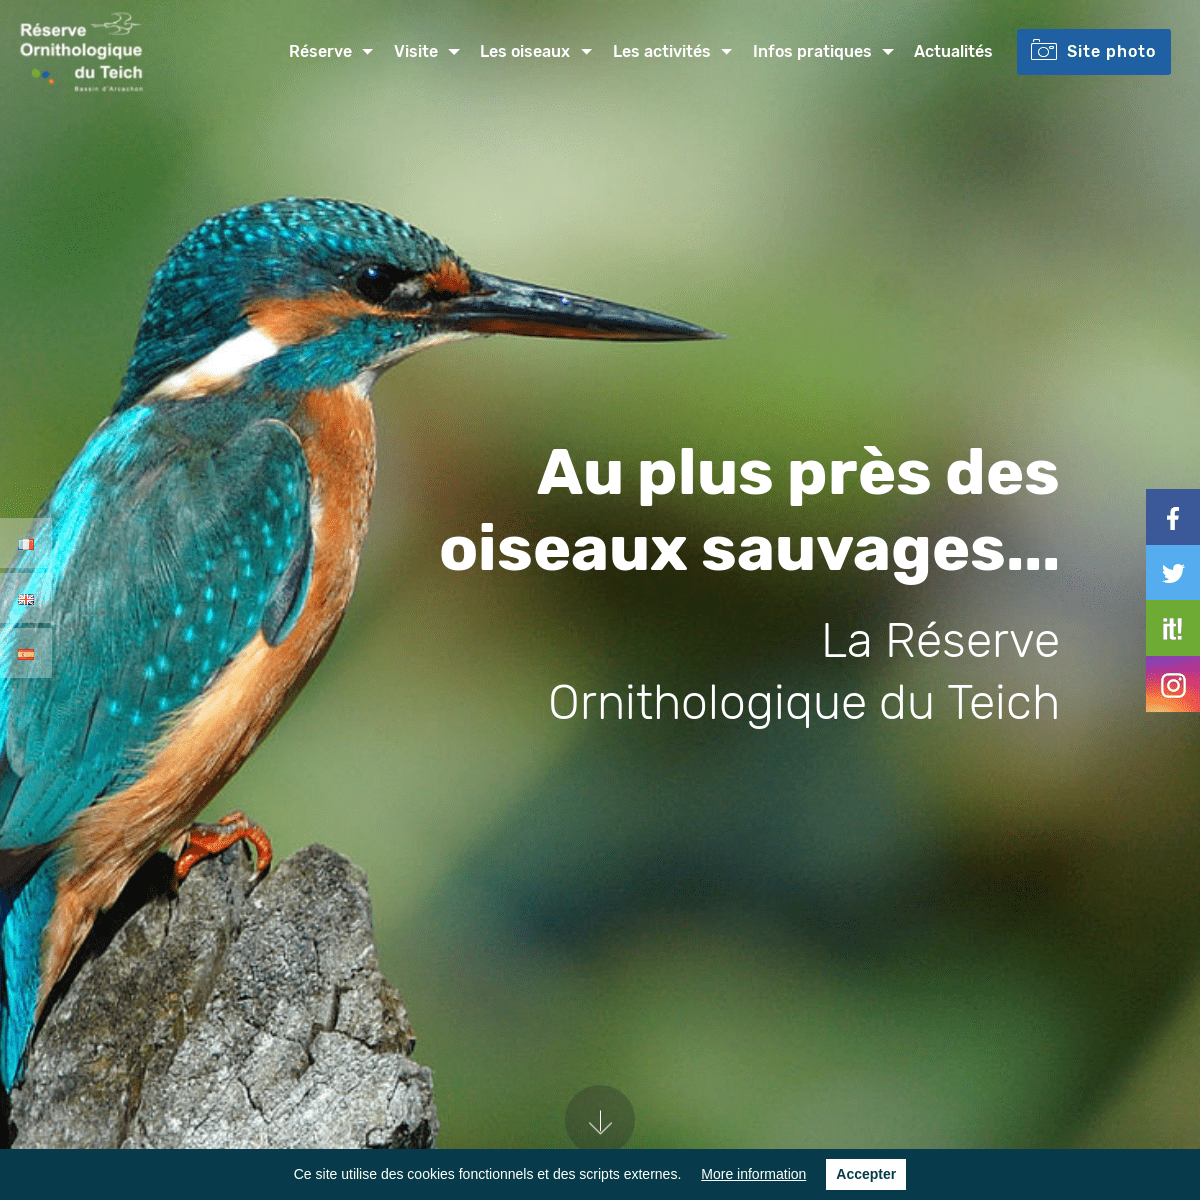 A complete backup of reserve-ornithologique-du-teich.com